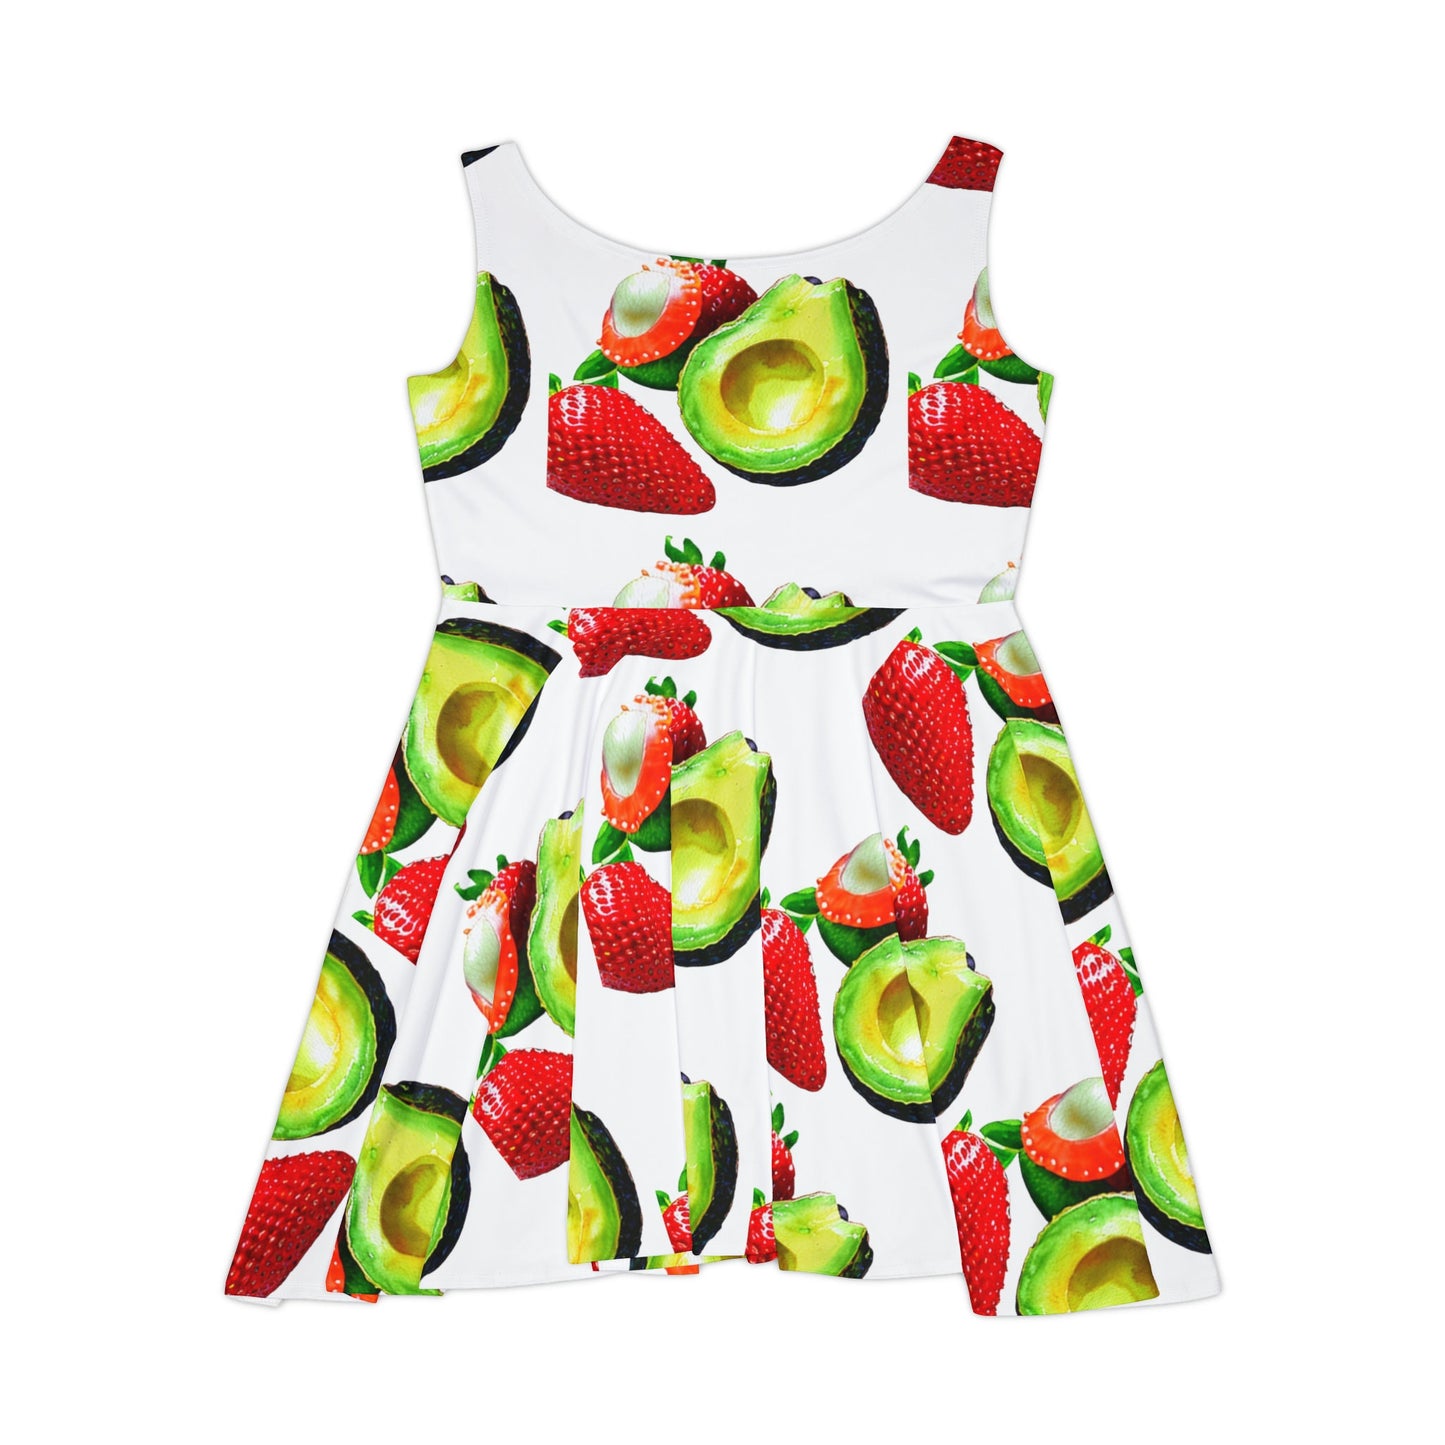 Avocado and Strawberry Women's Skater Dress (AOP)